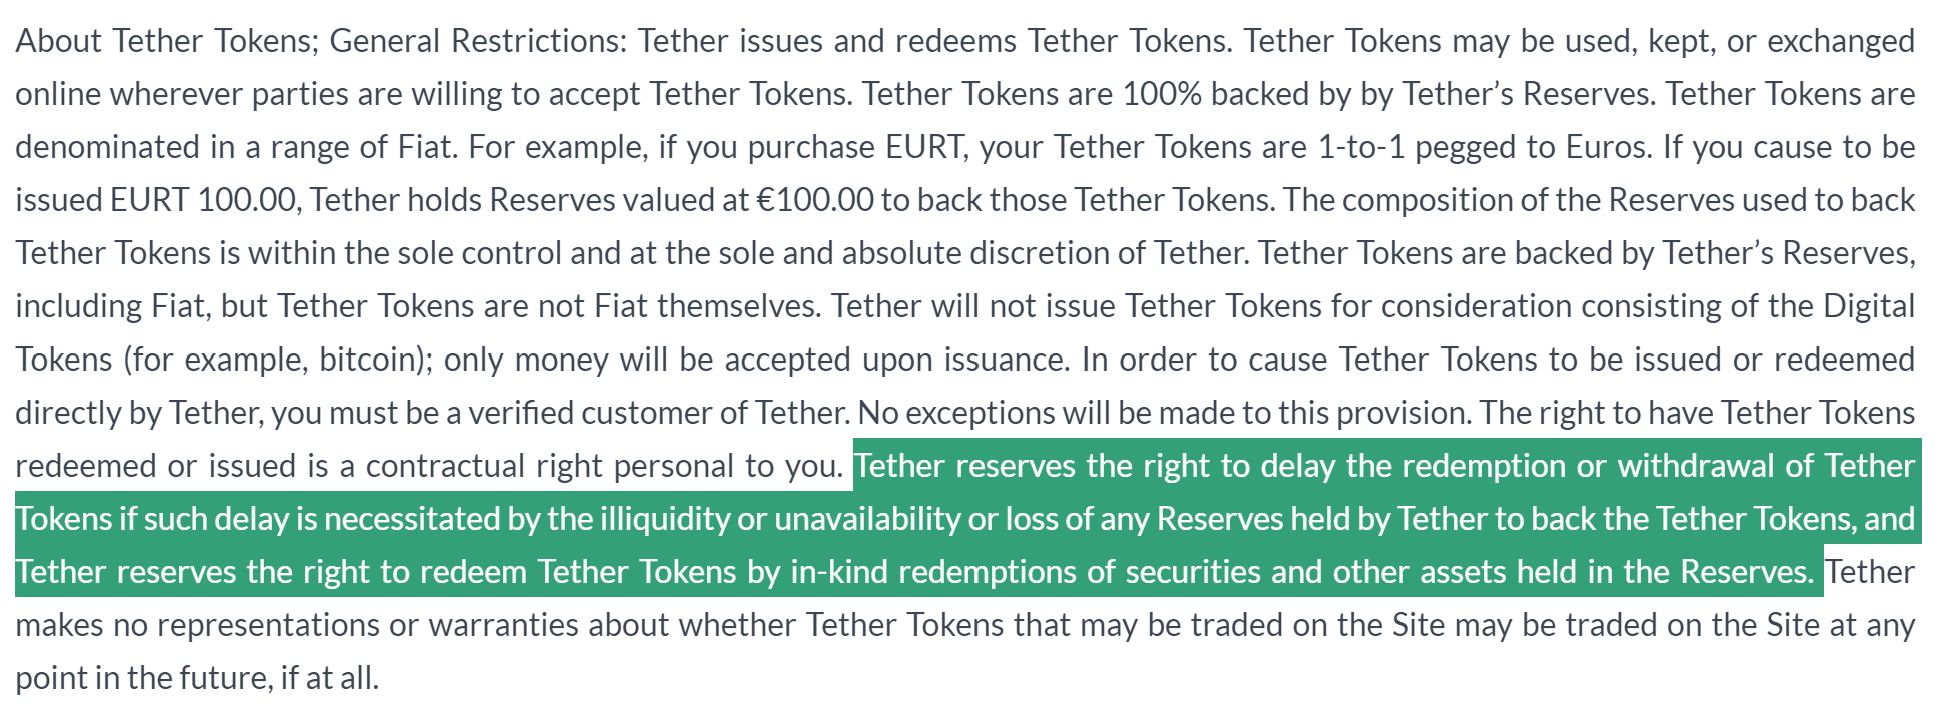 TLDR с сайта Tether: право обменять USDT на доллар есть ровно вплоть до того момента, когда его нет